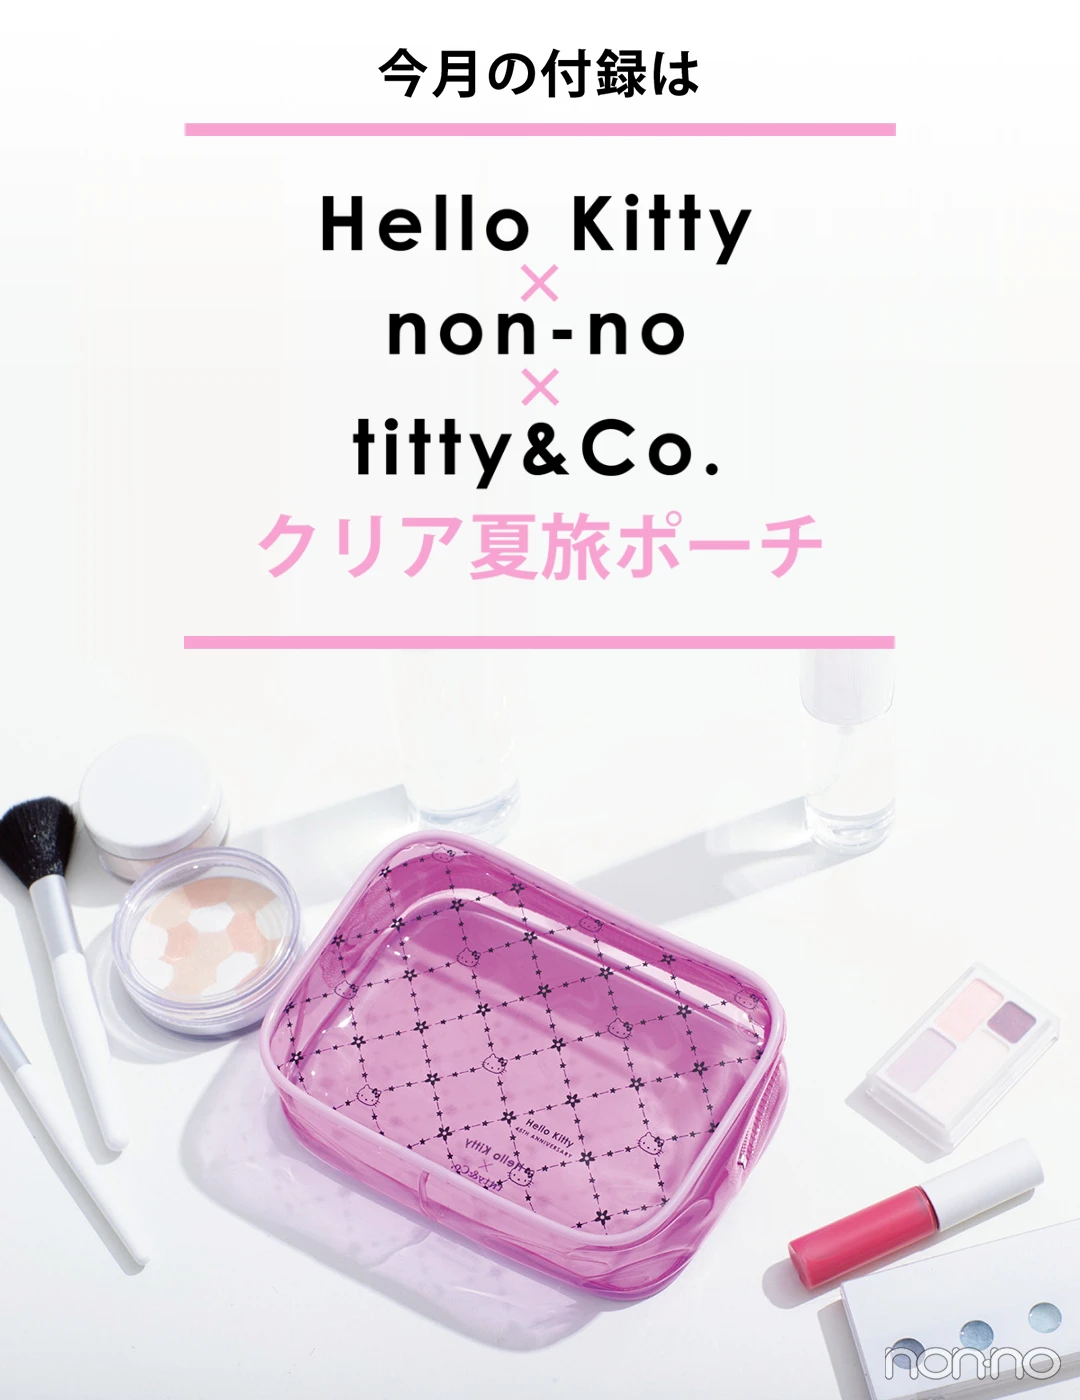 今月号の特別付録は...Hello Kitty×non-no×titty&amp;Co.♡クリア夏旅ポーチ